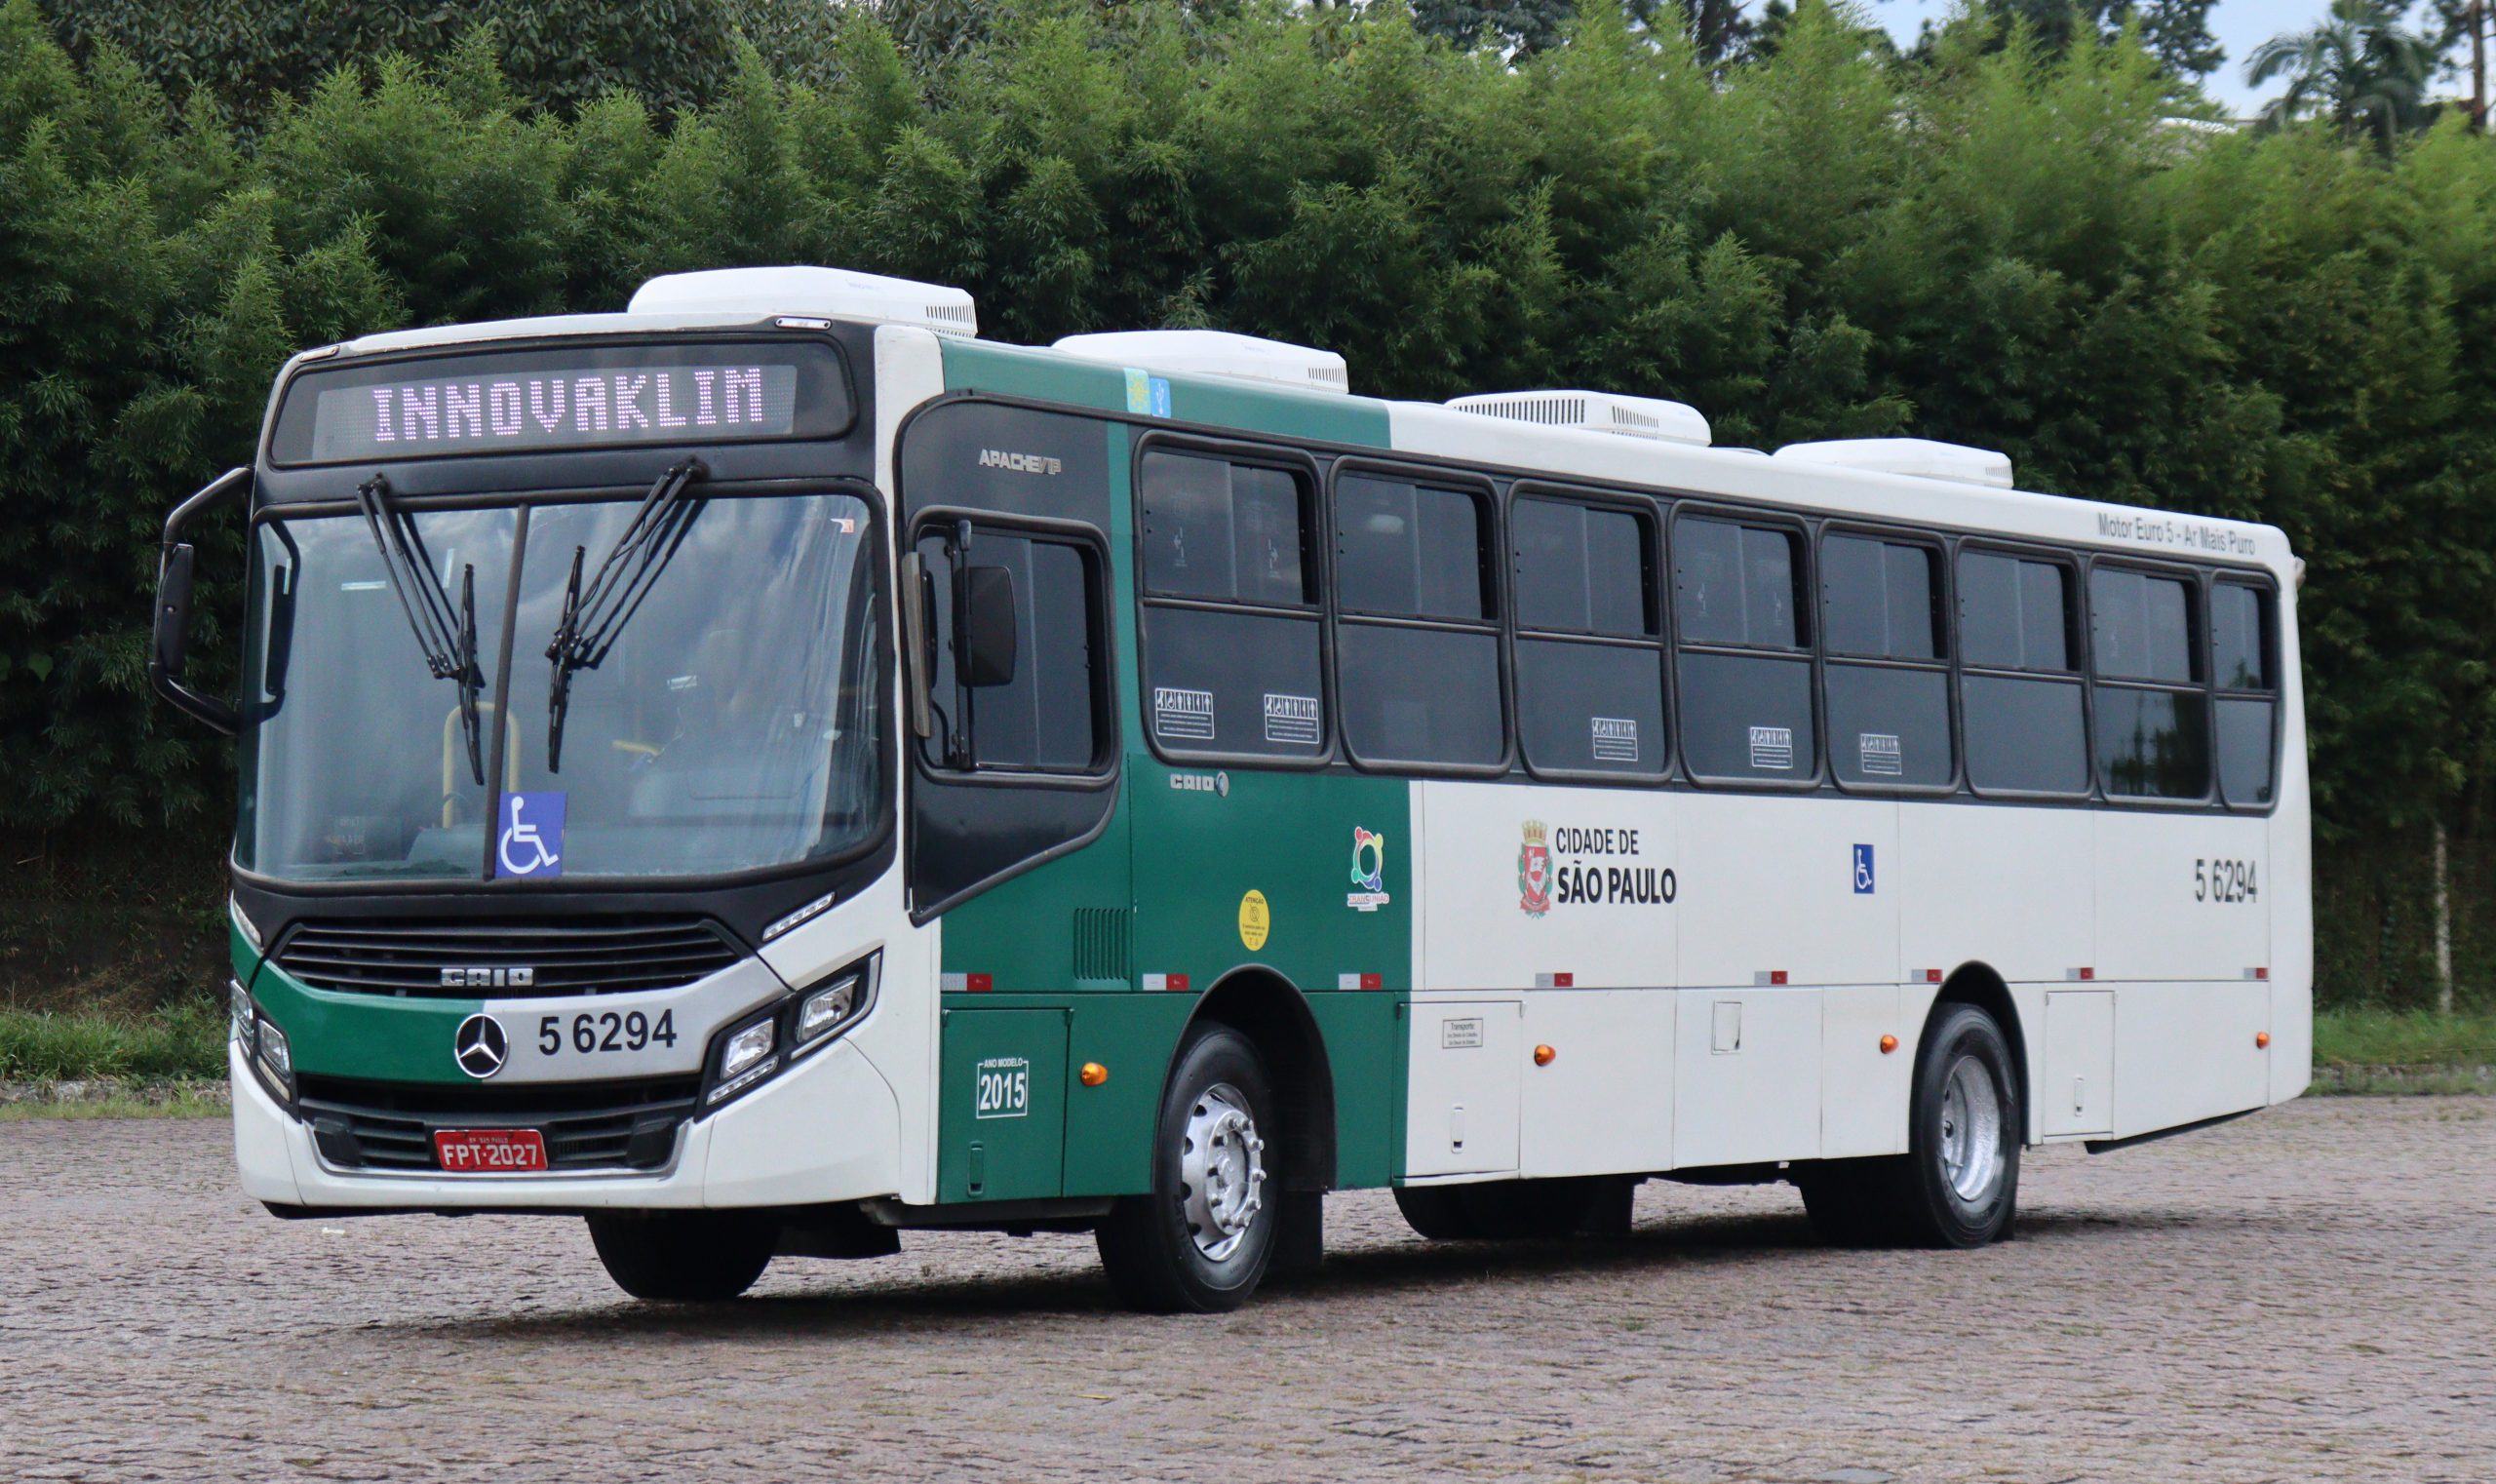 Ônibus com itinerário destacando o nome Innovaklim